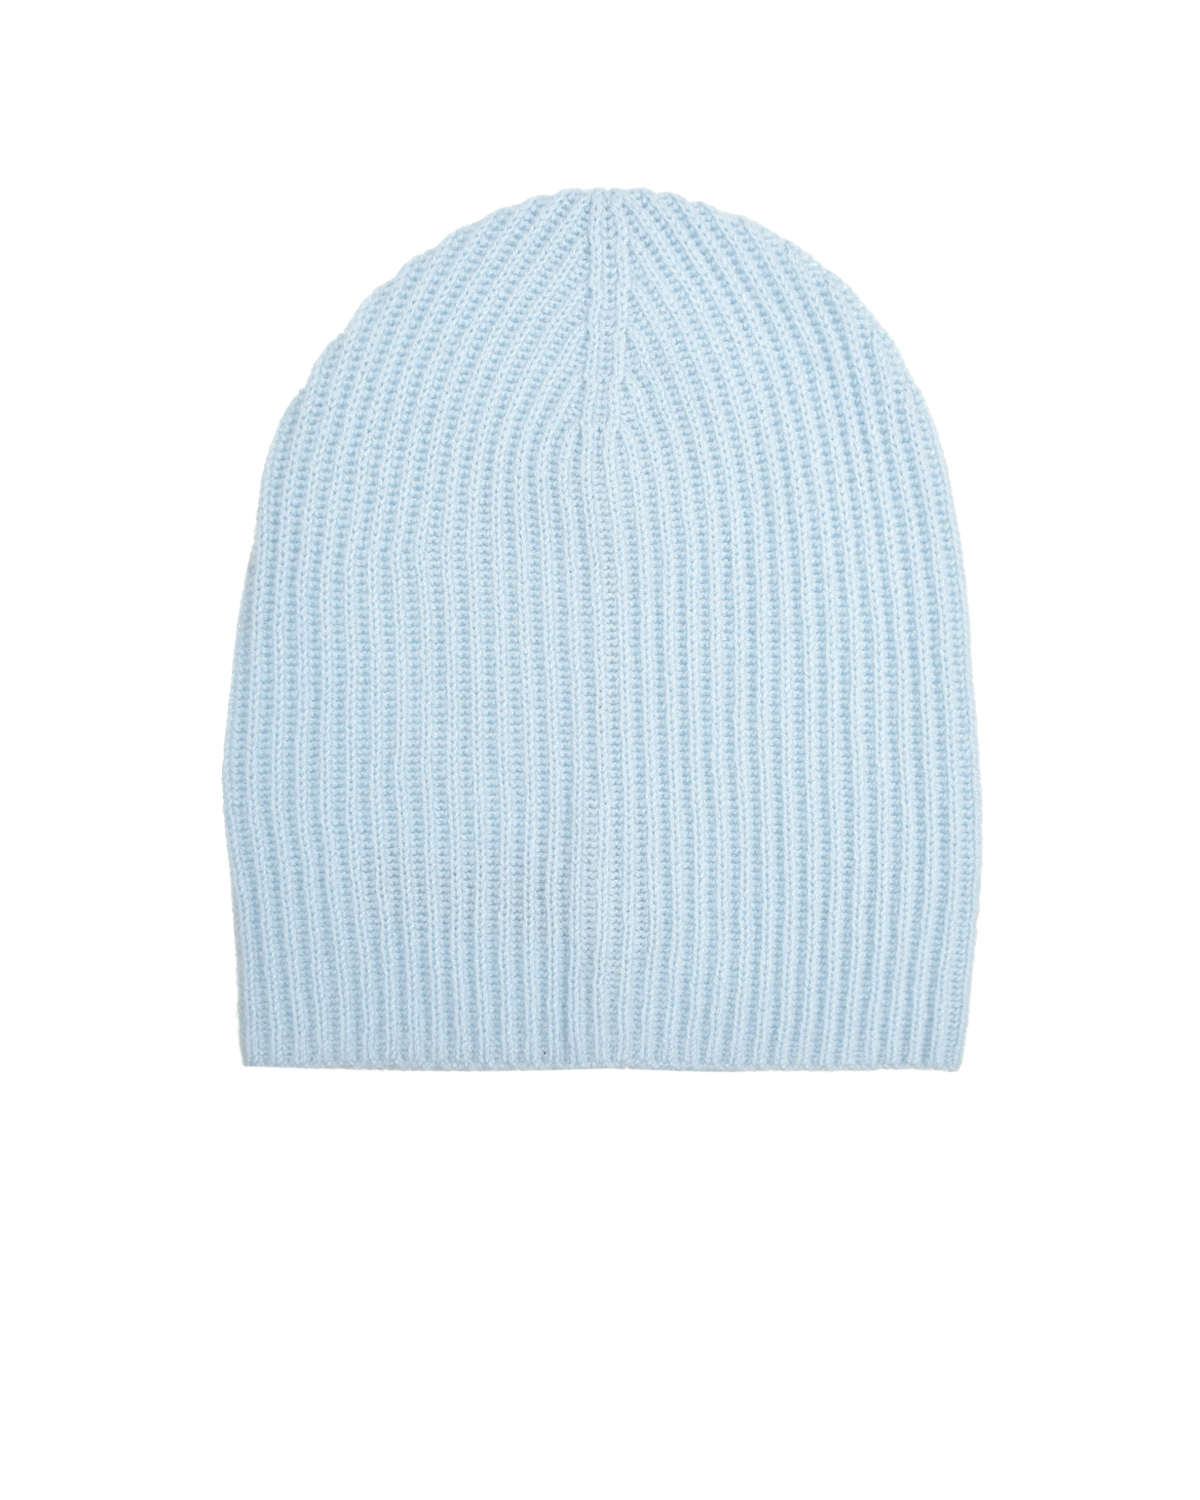 Голубая шапка из кашемира Allude, размер unica, цвет голубой